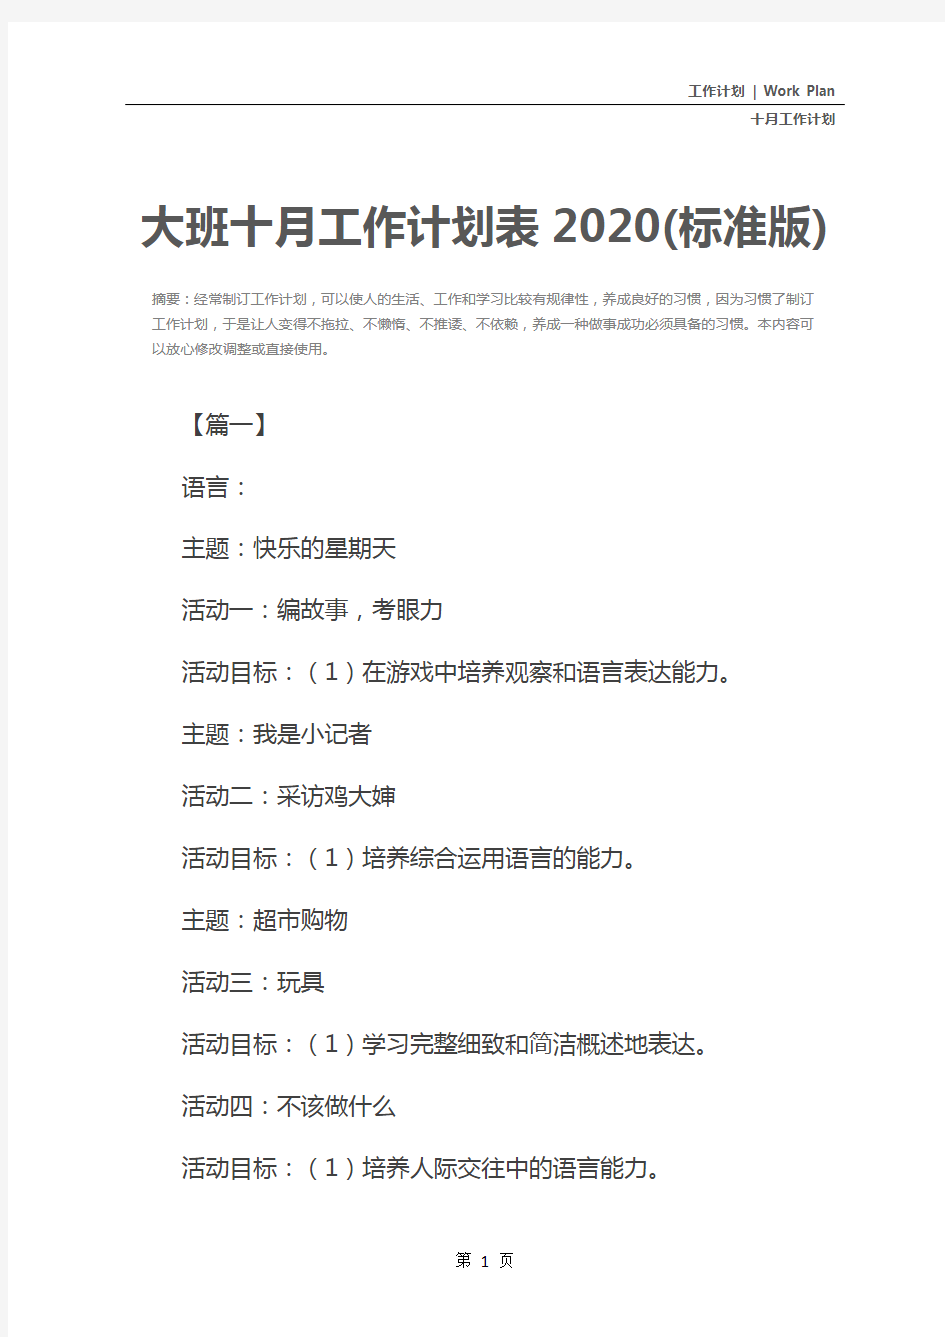 大班十月工作计划表2020(标准版)